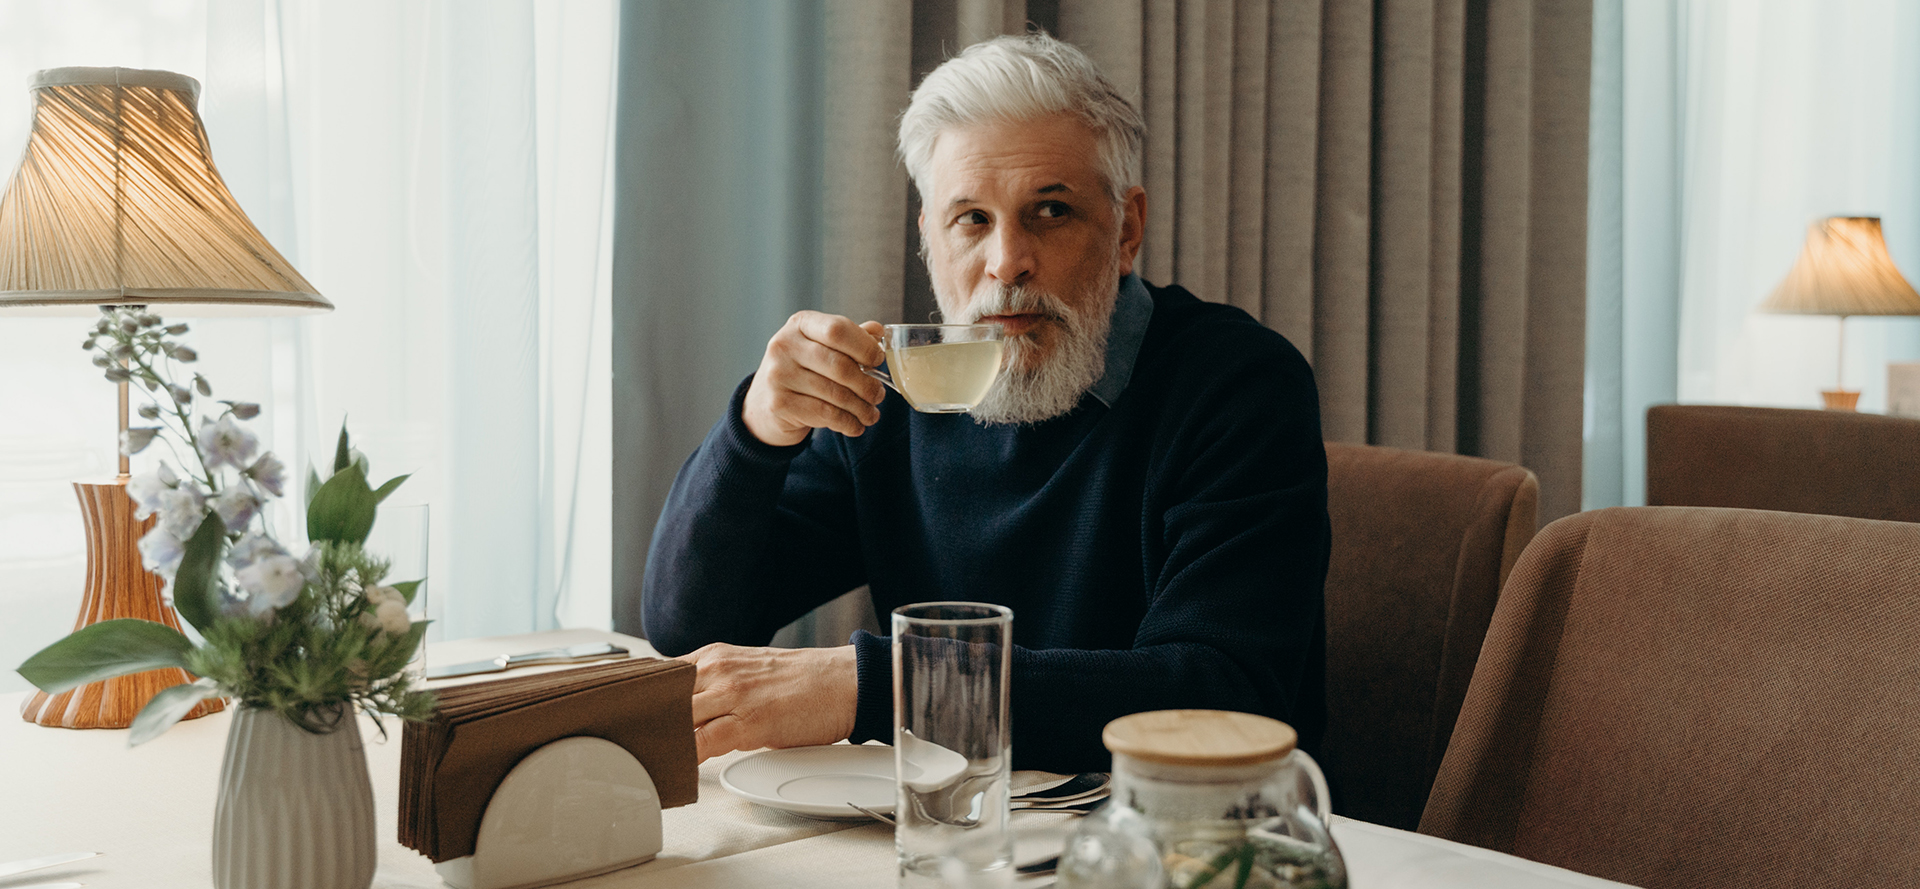 Um único homem mais velho está bebendo chá.